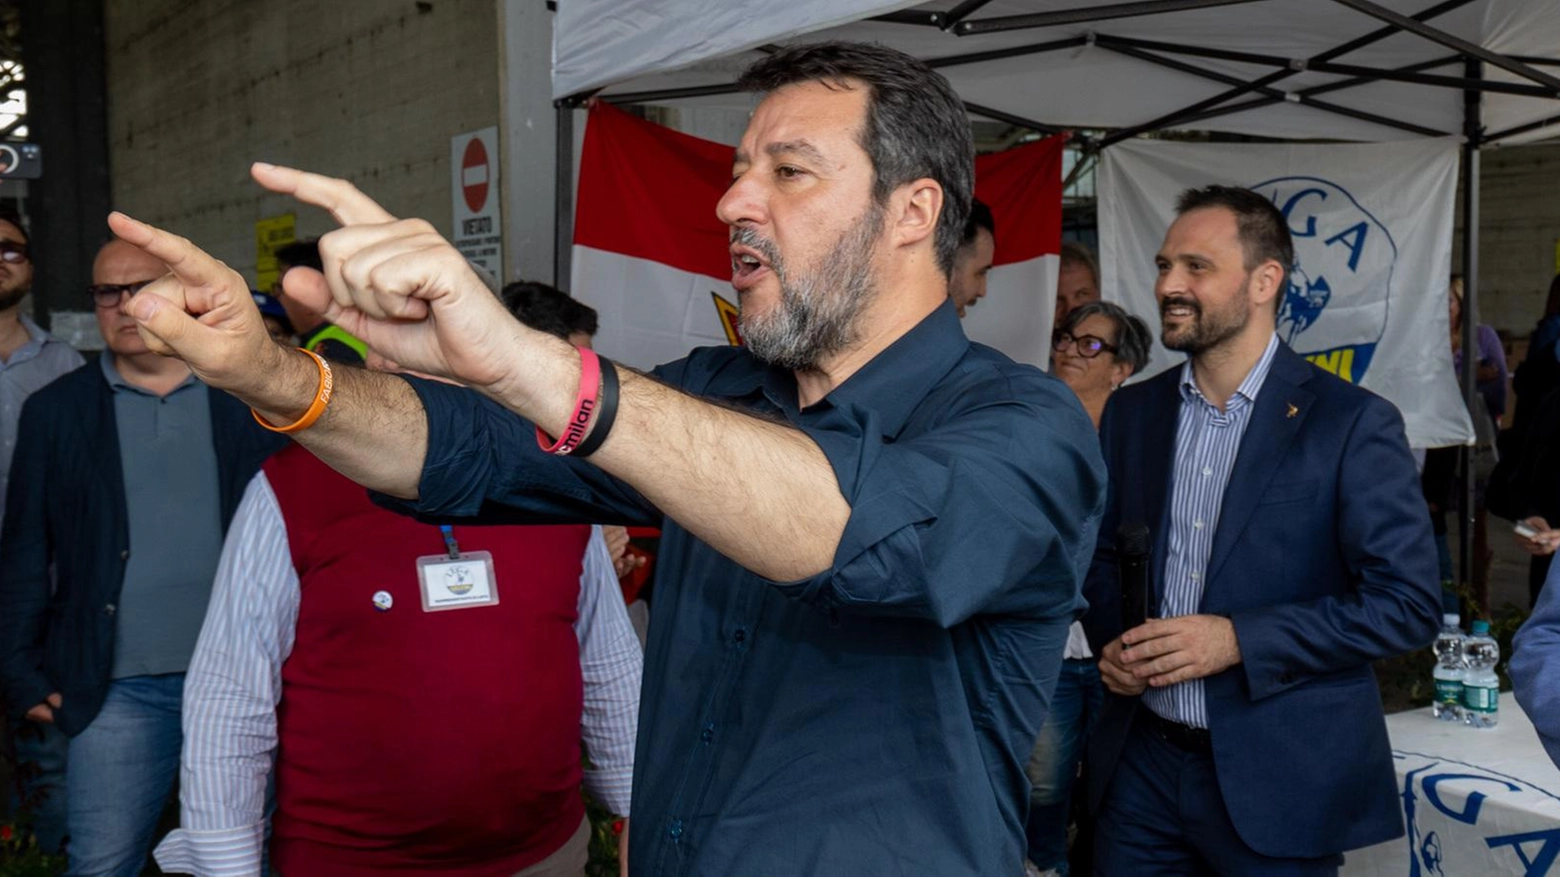 Il ministro Salvini e la stazione  Che duelli sull’Alta velocità  Tocca ai tecnici valutare le sedi